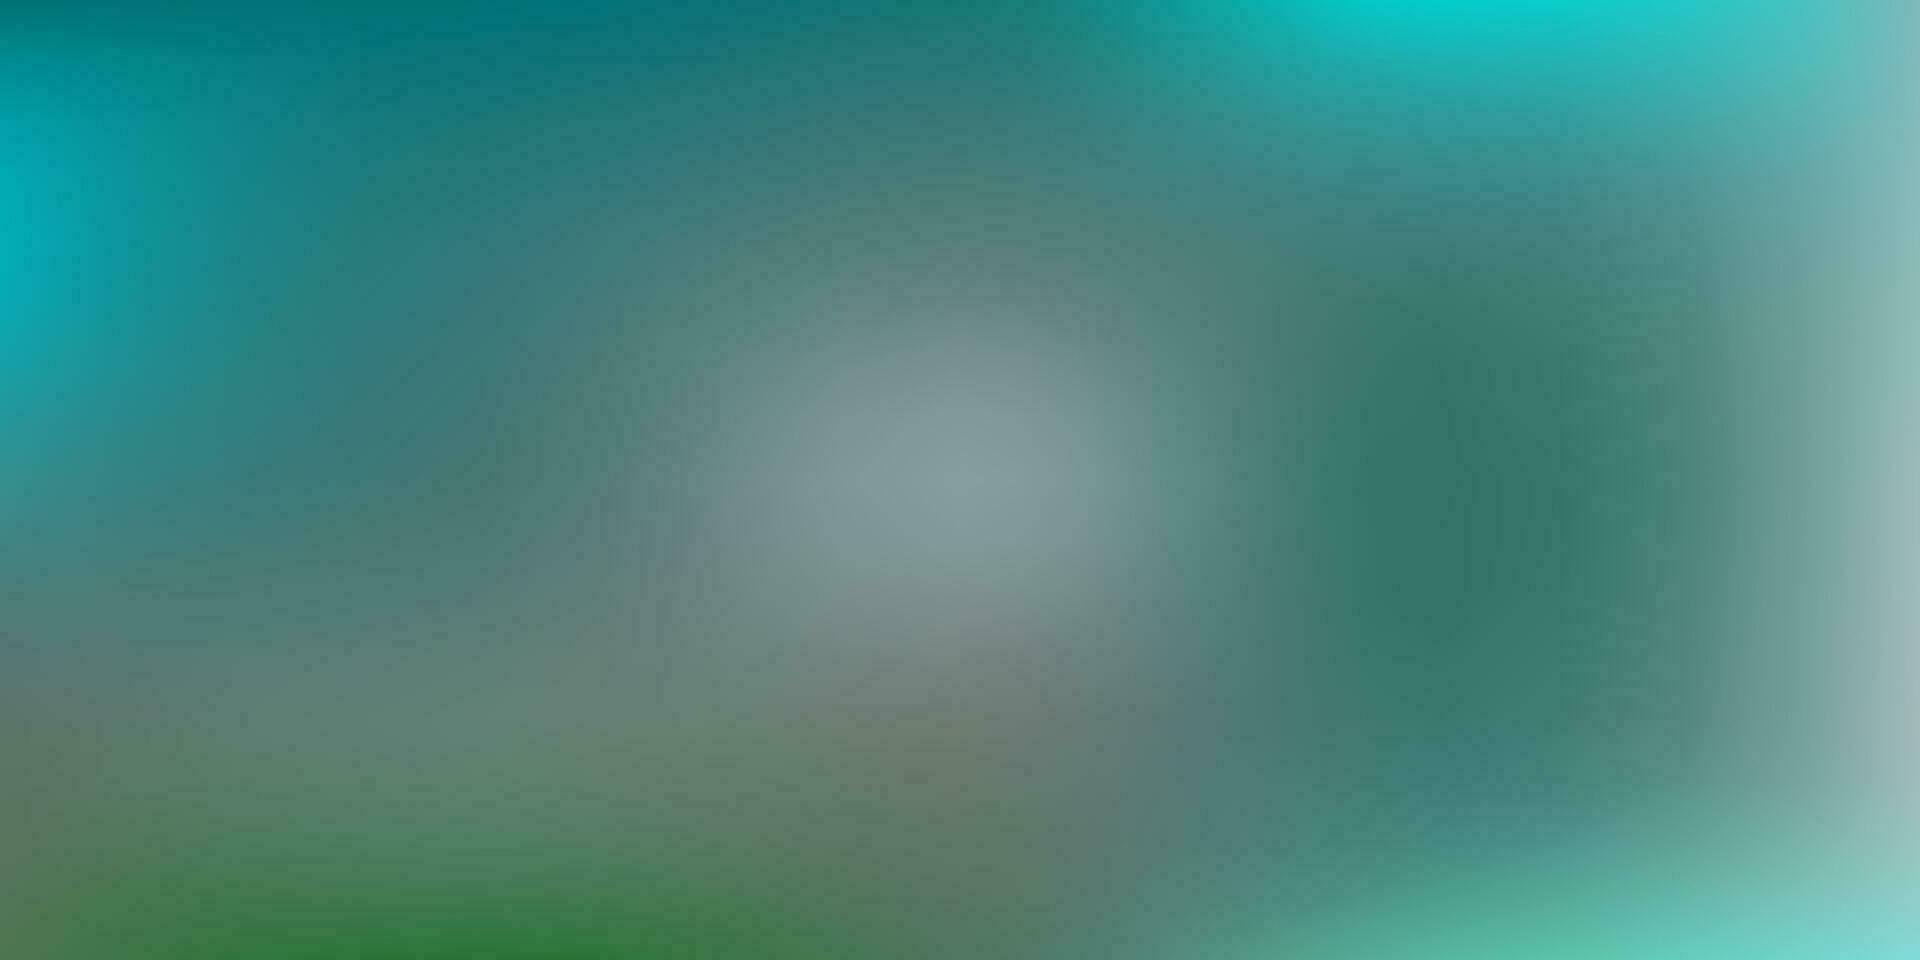 Light blue, green vector blur layout.